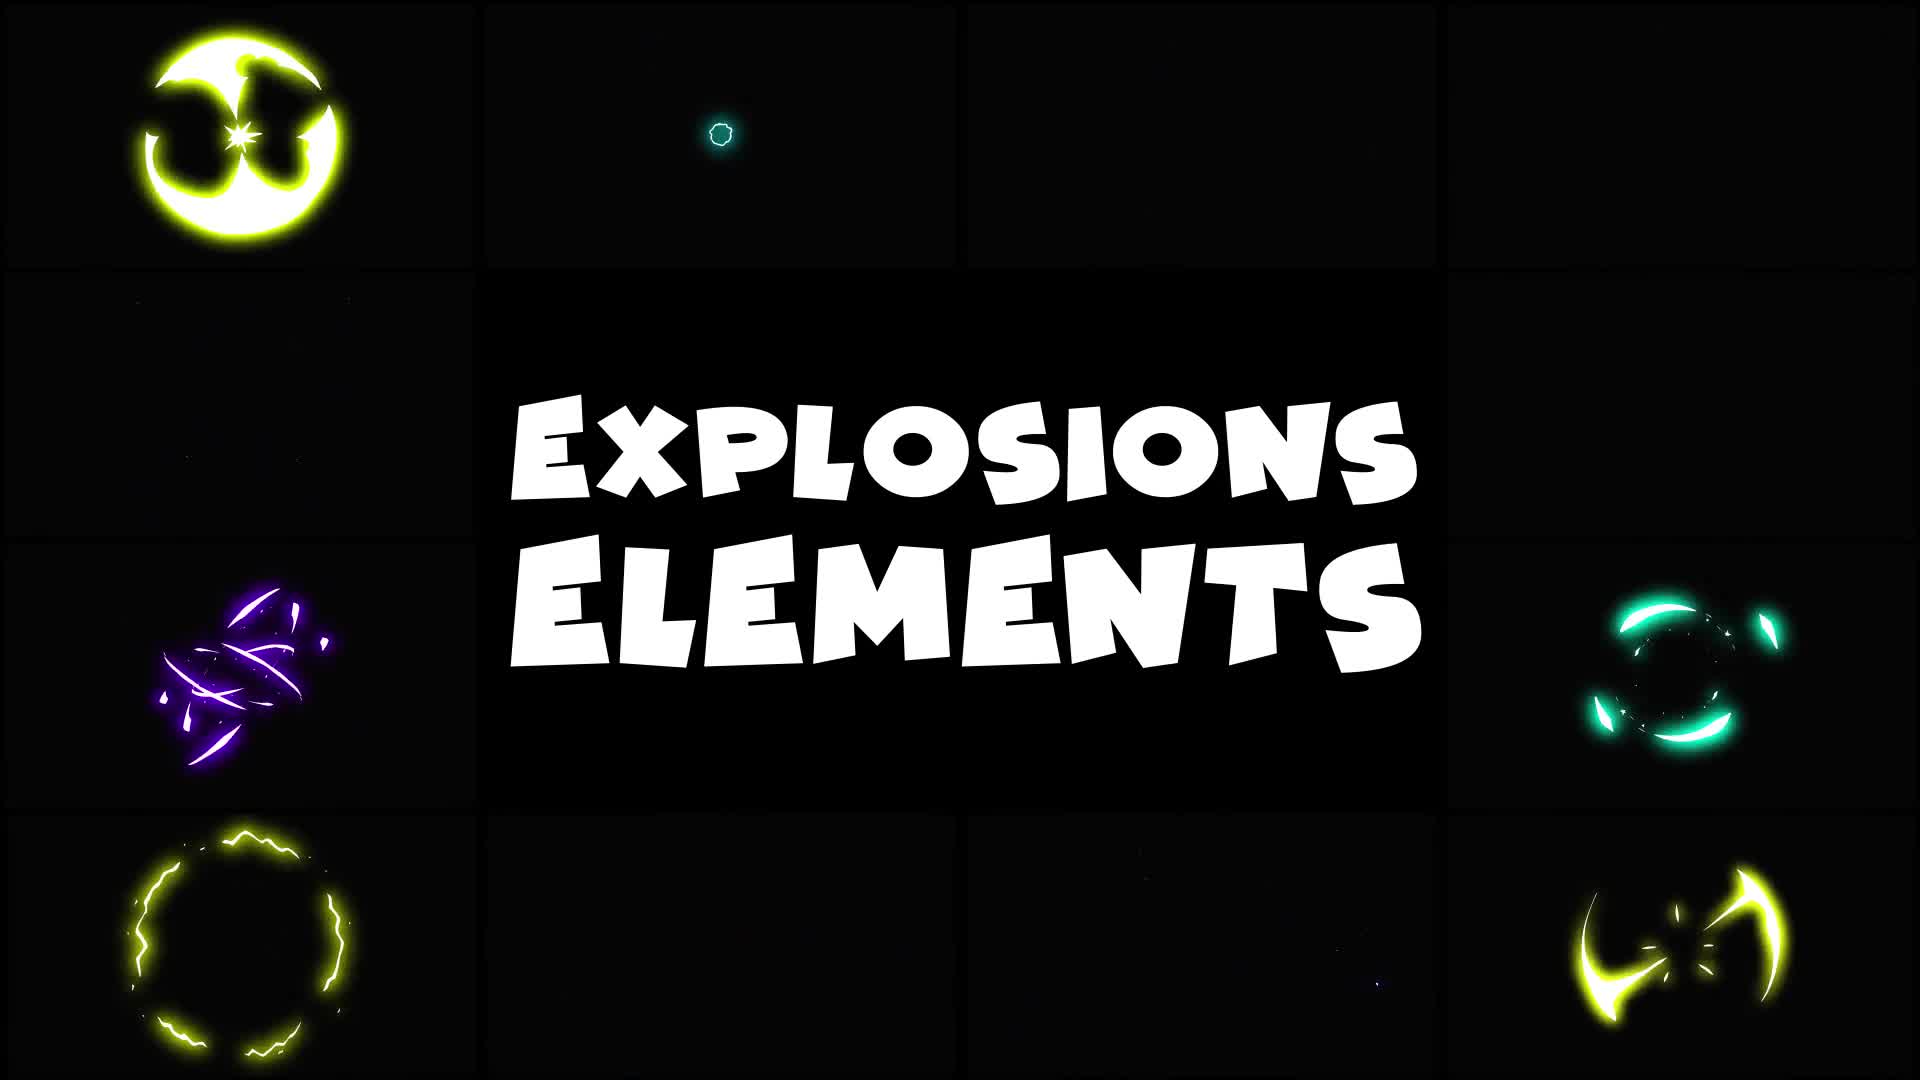 Energy Explosions | Premiere Pro MOGRT Videohive 30559684 Premiere Pro Image 1